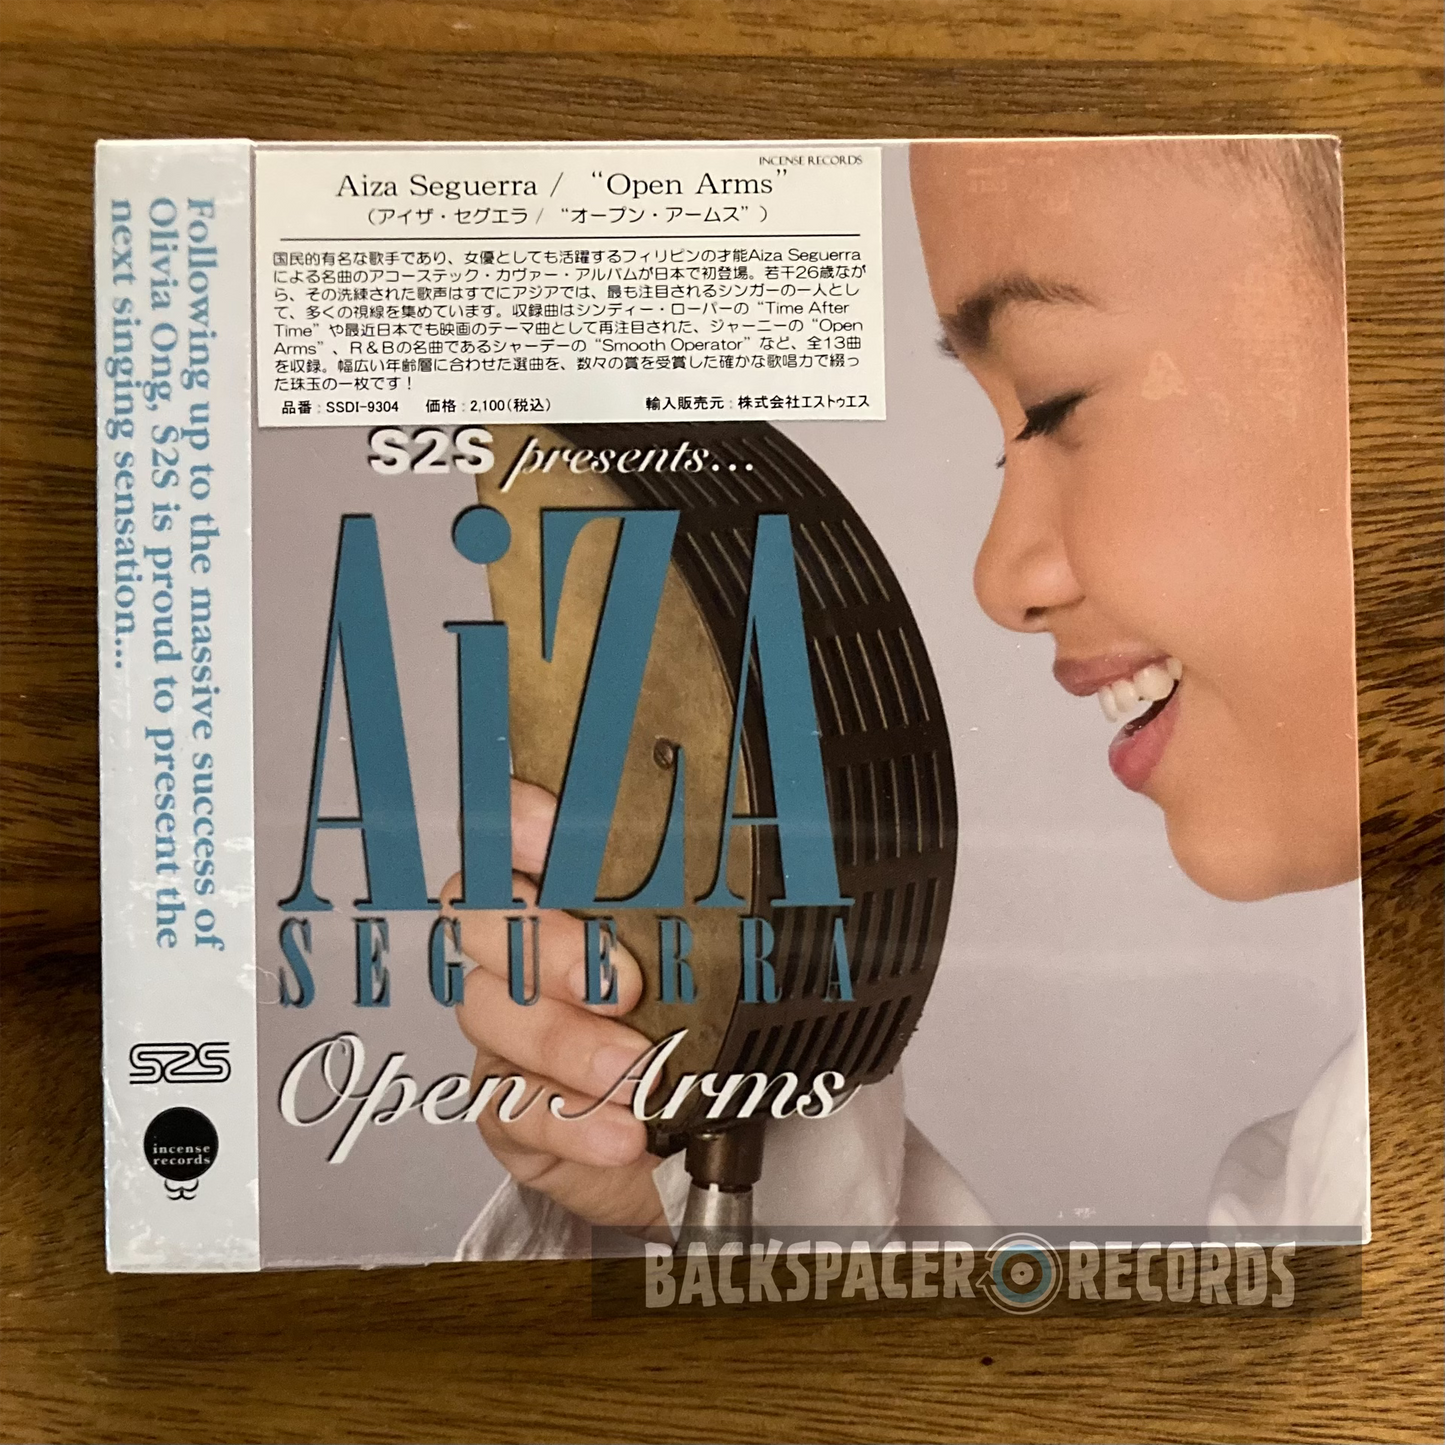 Aiza Seguerra - Open Arms CD (Sealed)